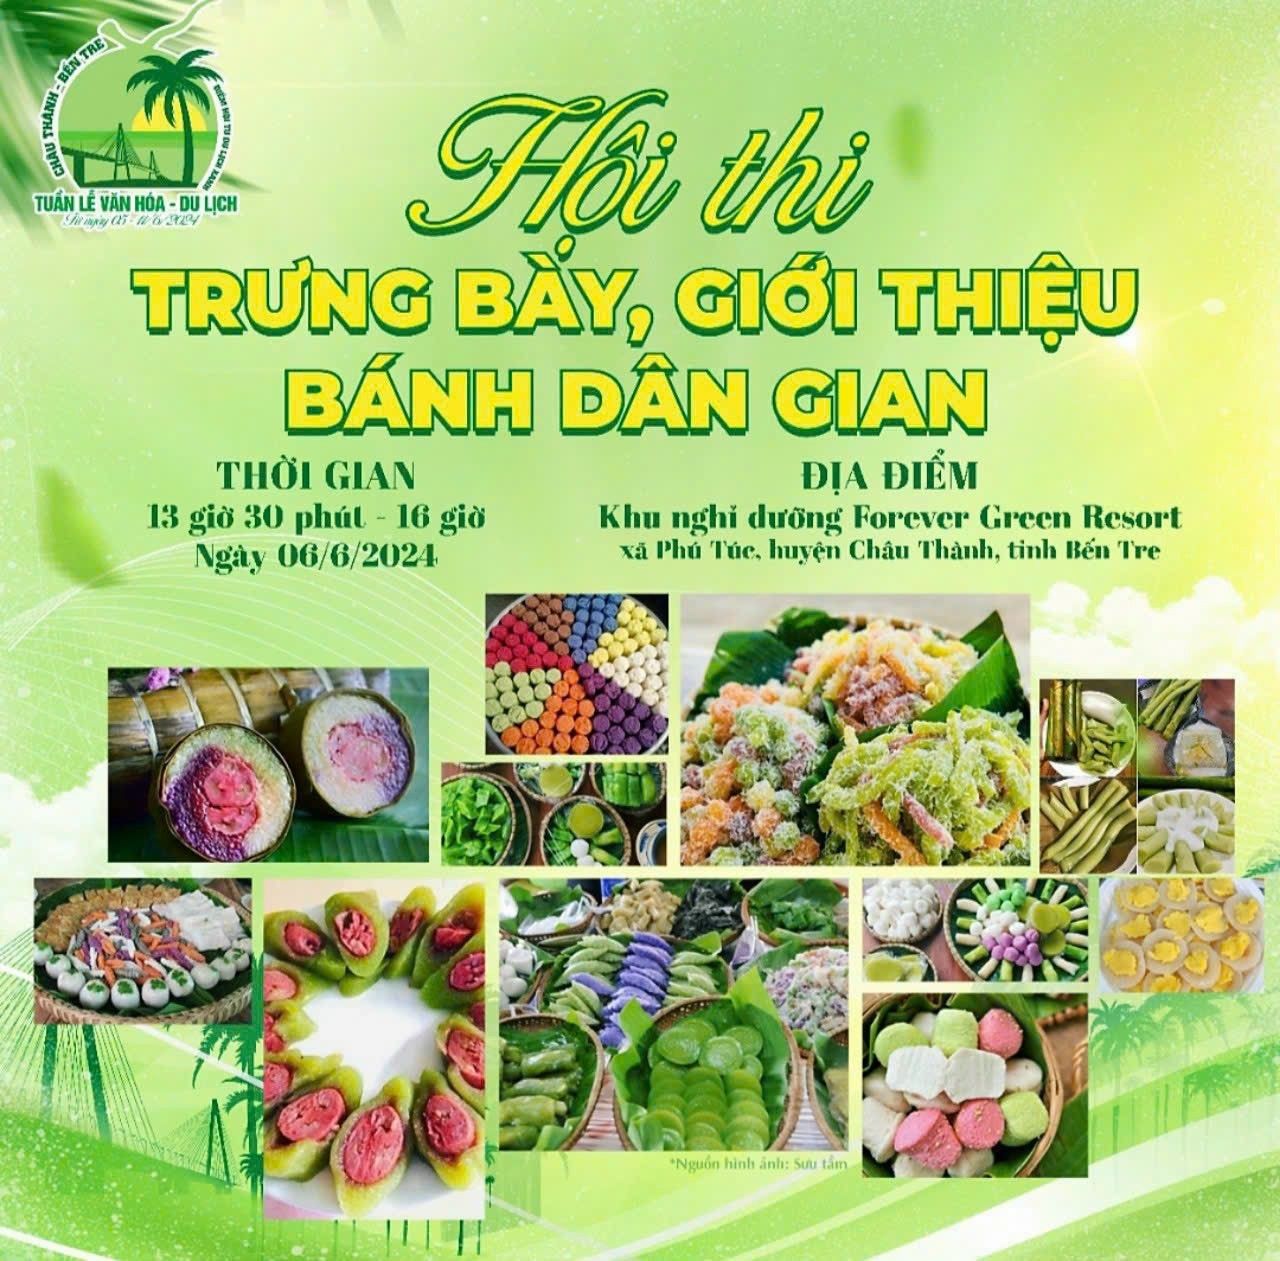 Chau Thanh 8